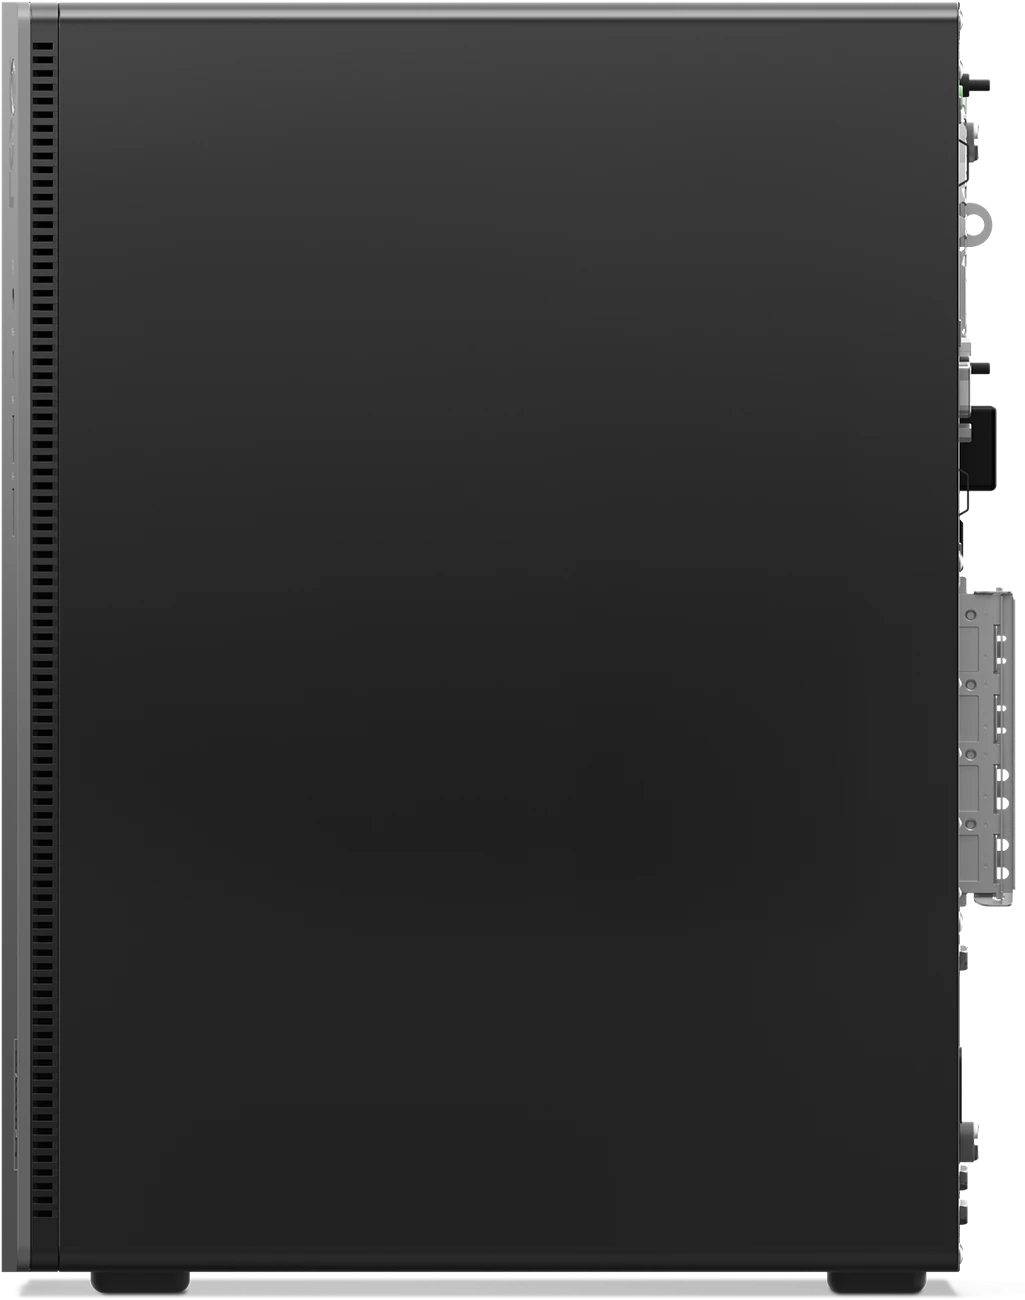 Системный блок Lenovo LOQ Tower Gen 9 (90X0006RKZ)